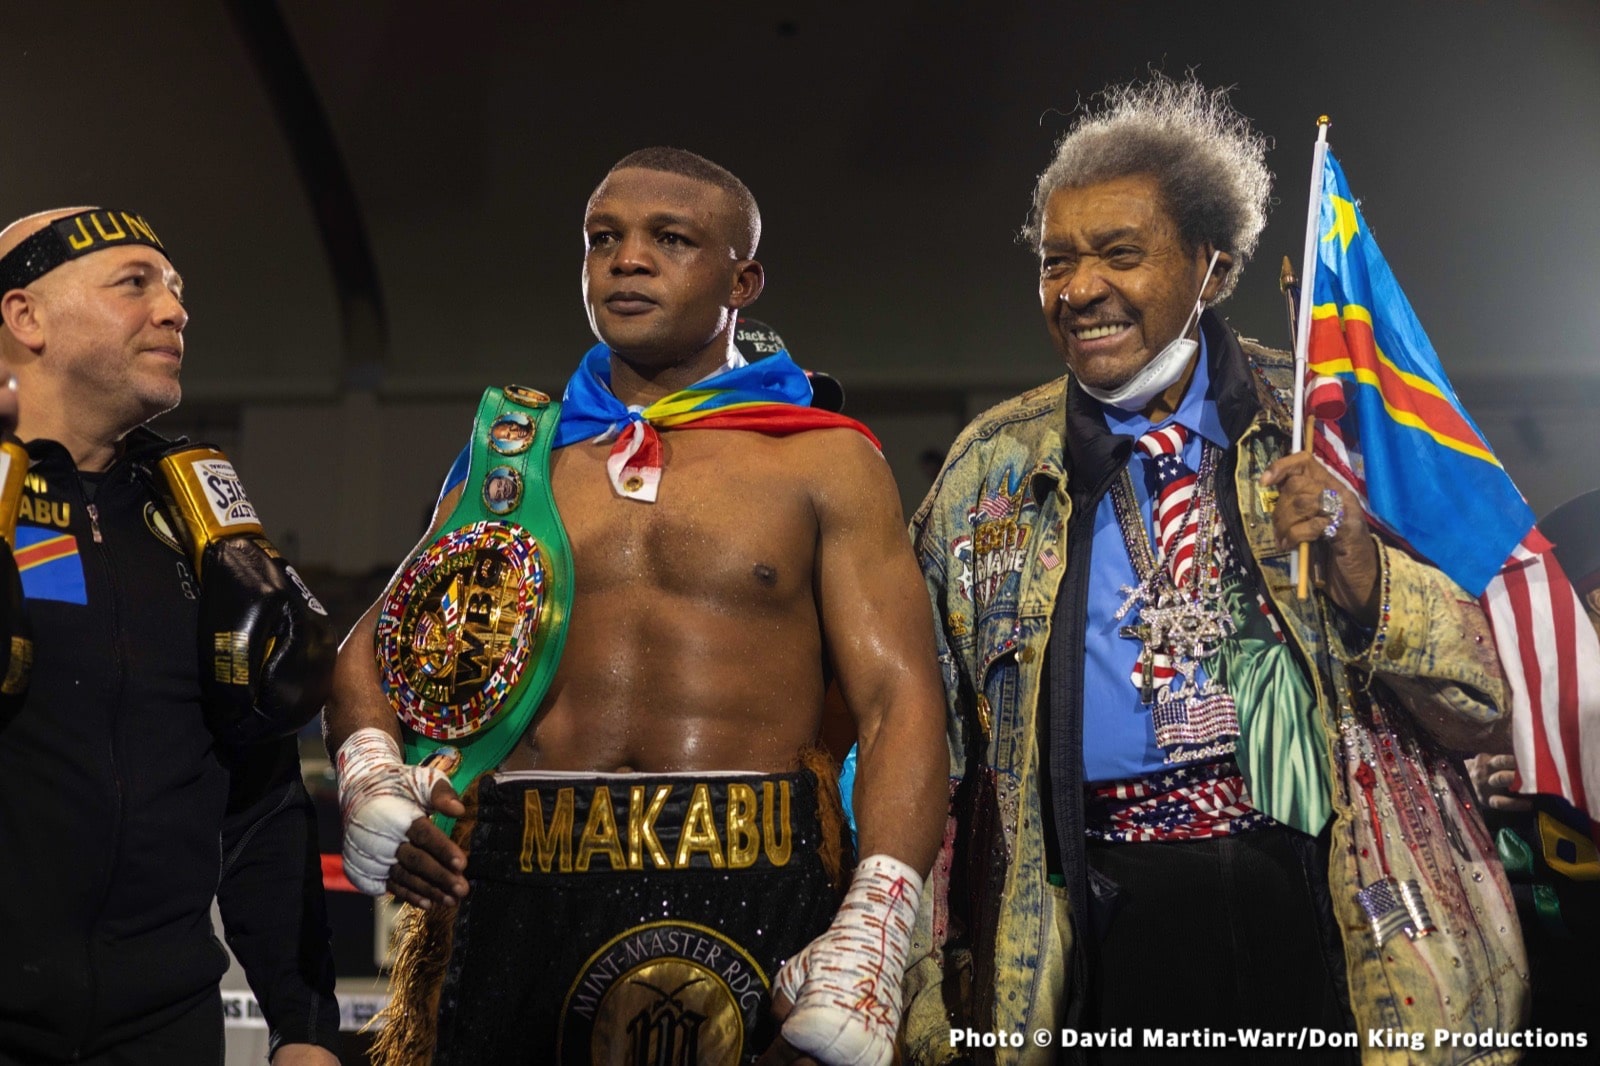 Ilunga Makabu boxing image / photo